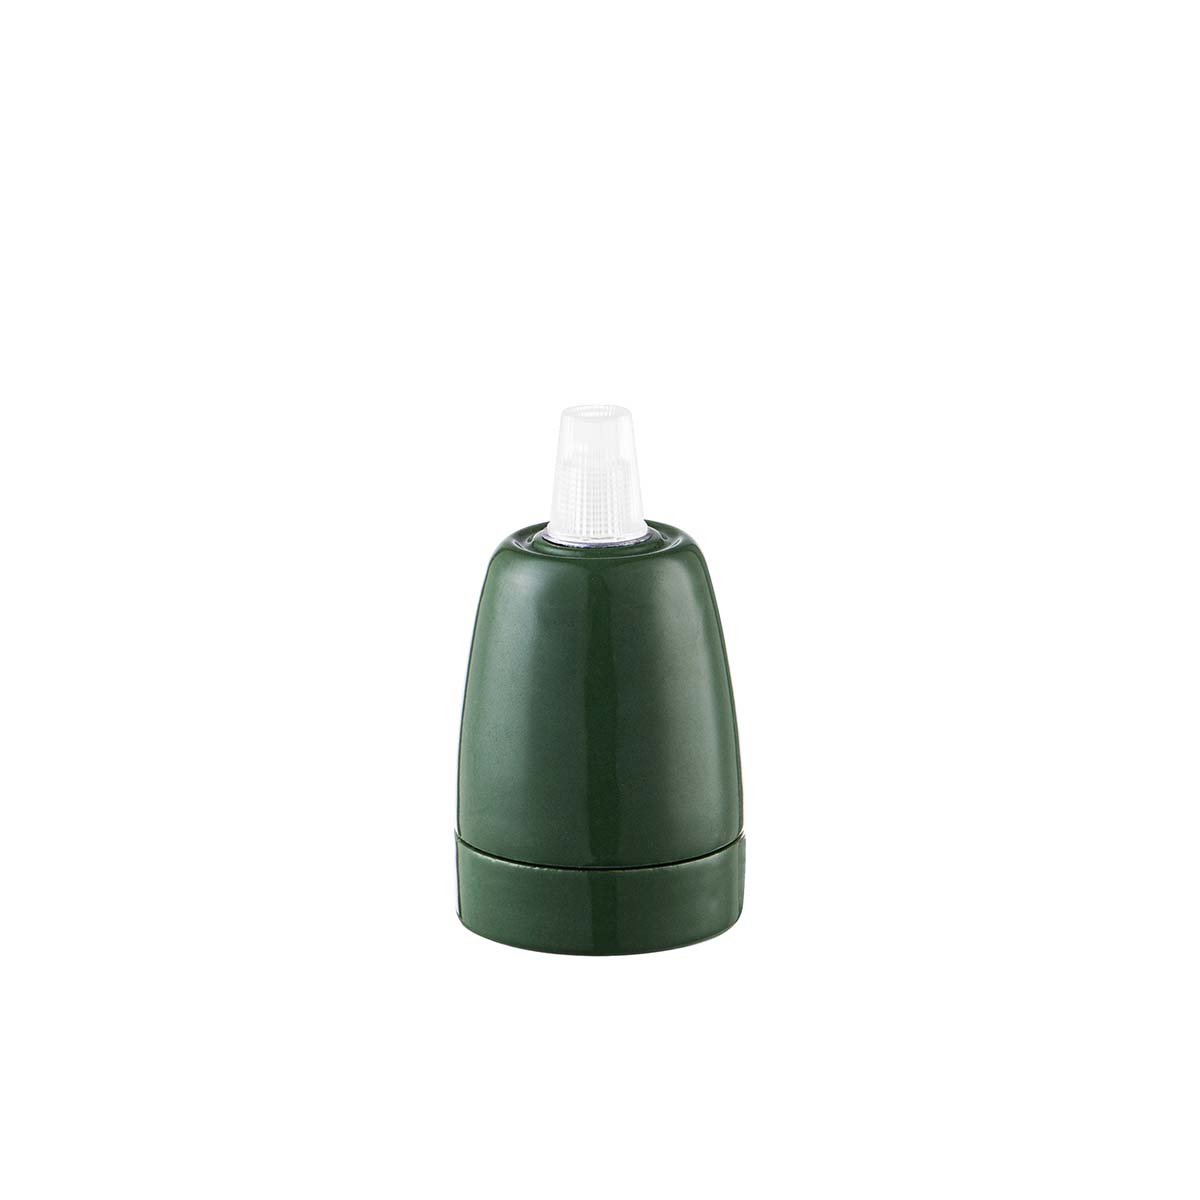 Tangla lighting - TLLH025GN - lamp holder porcelain - E27 - pot - green